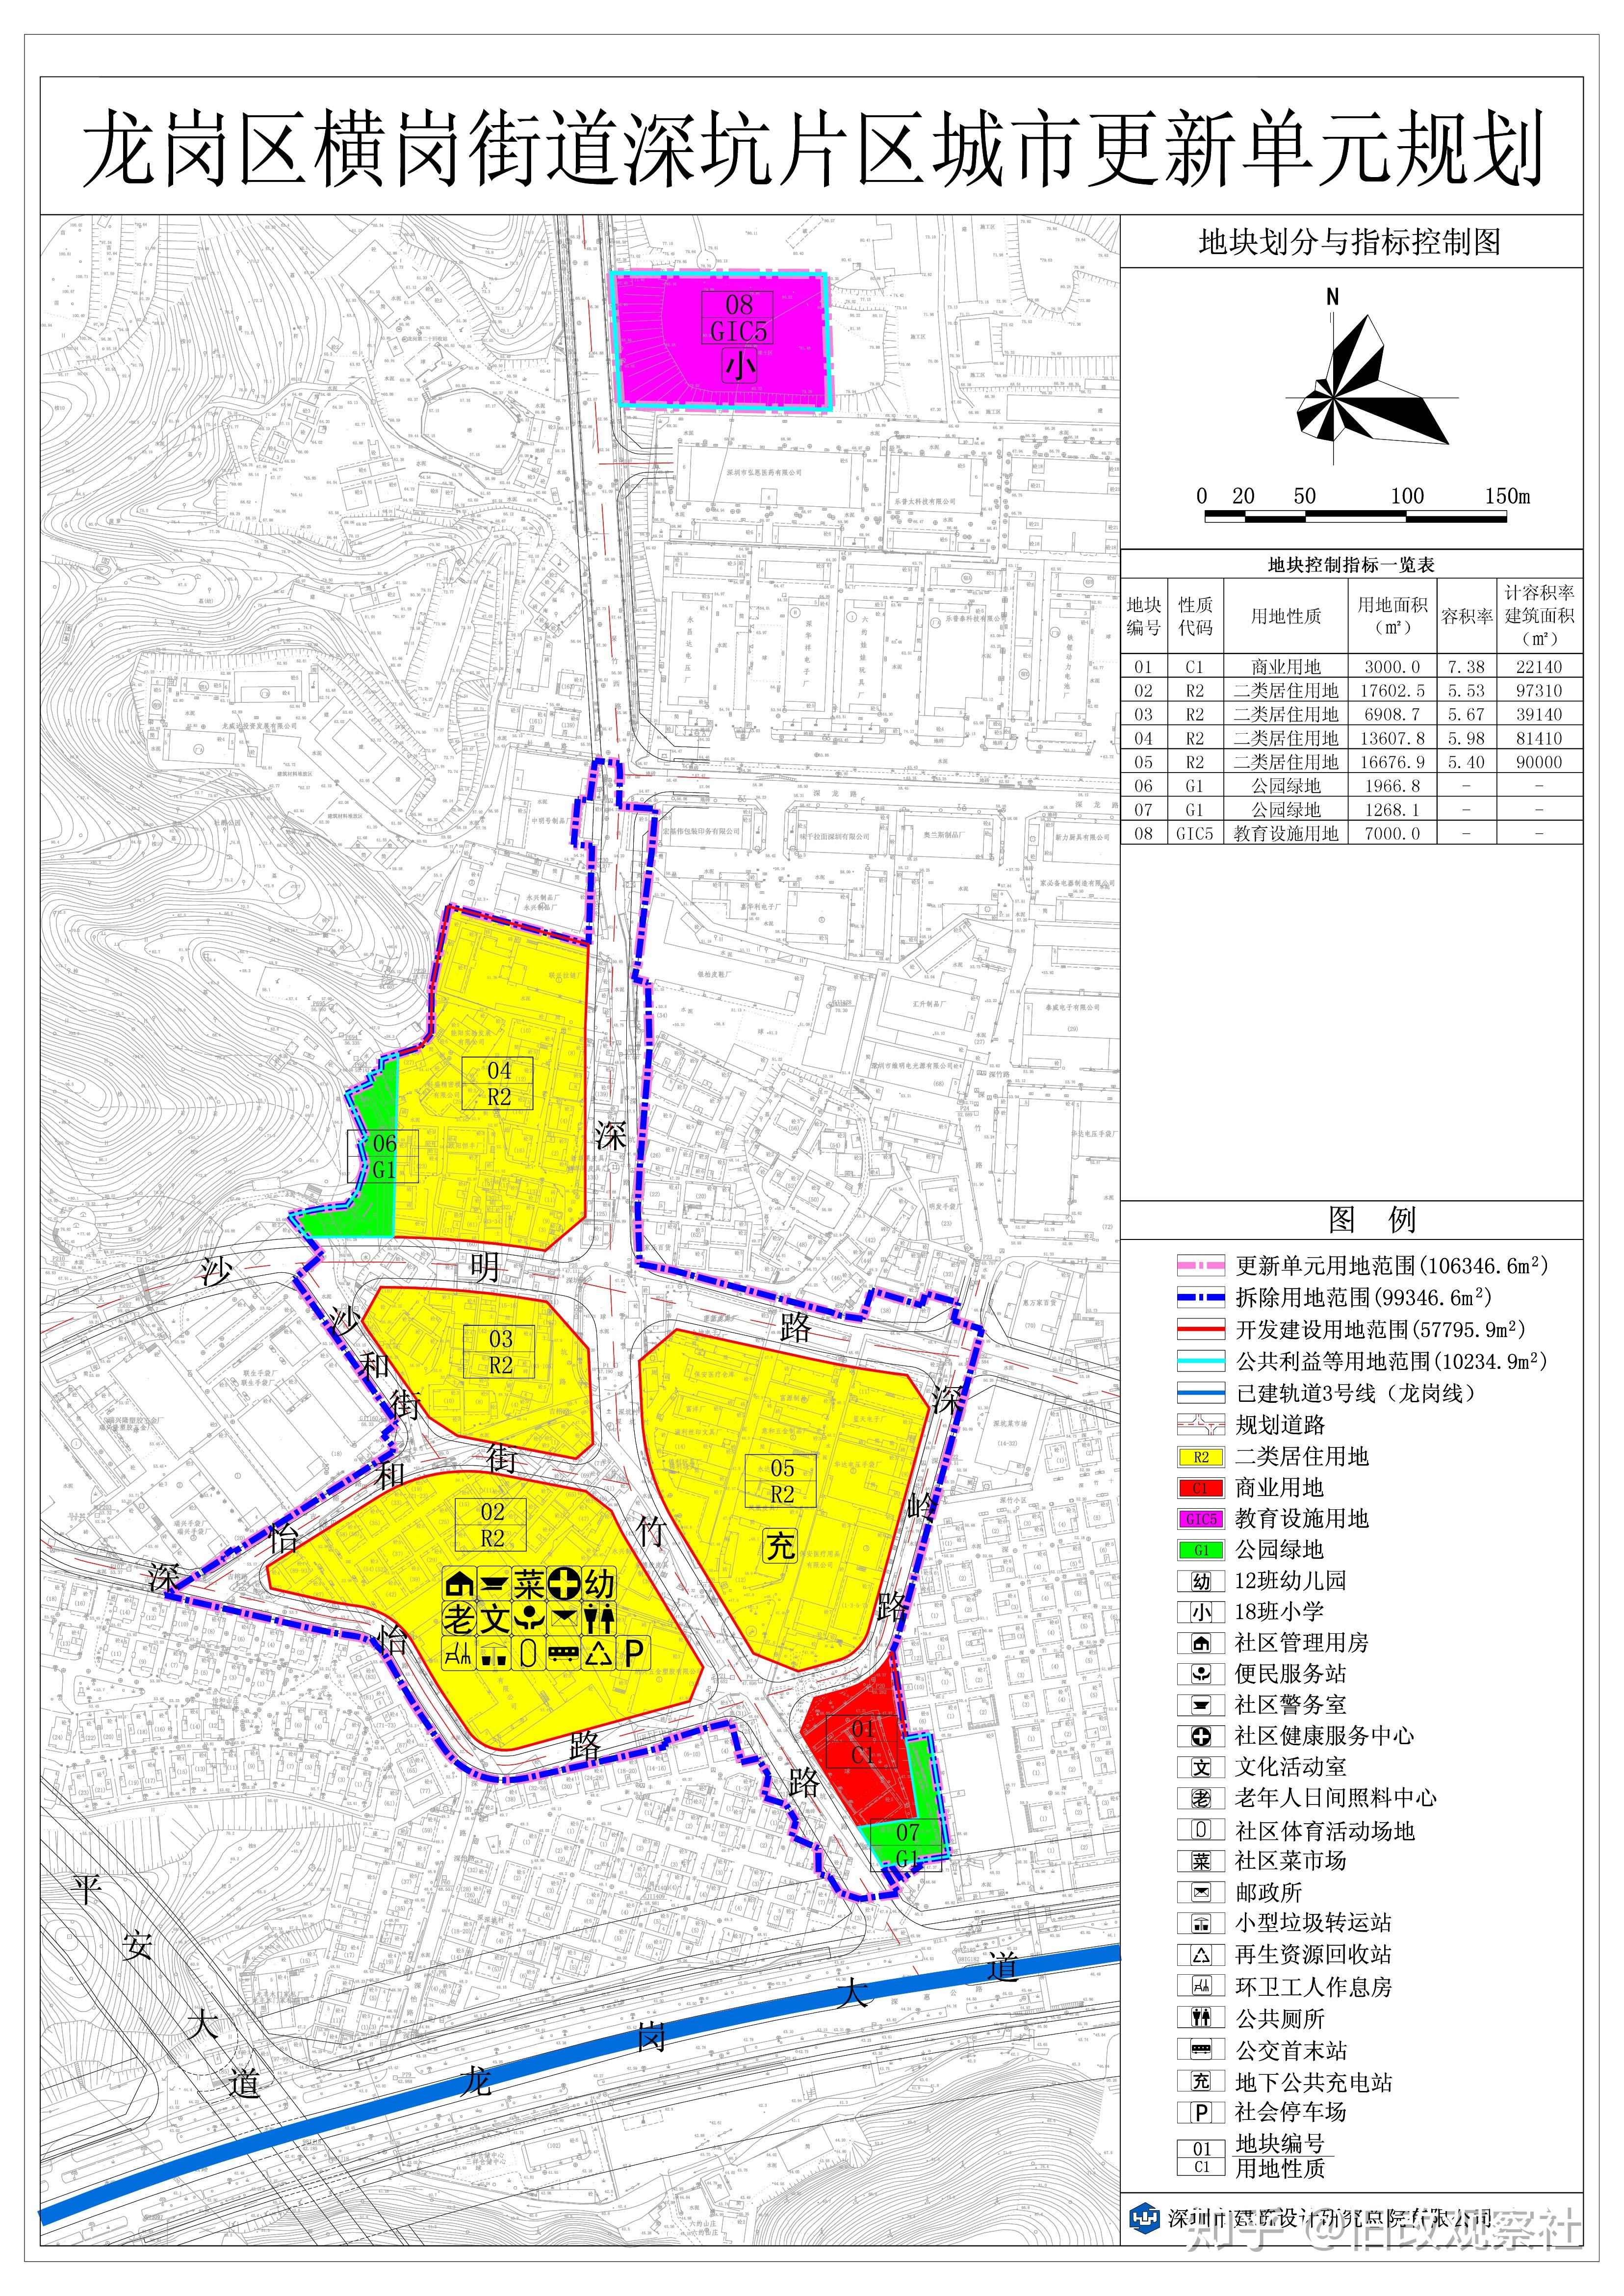 90200《2014年深圳市城市更新单元计划第三批计划》龙岗区横岗街道